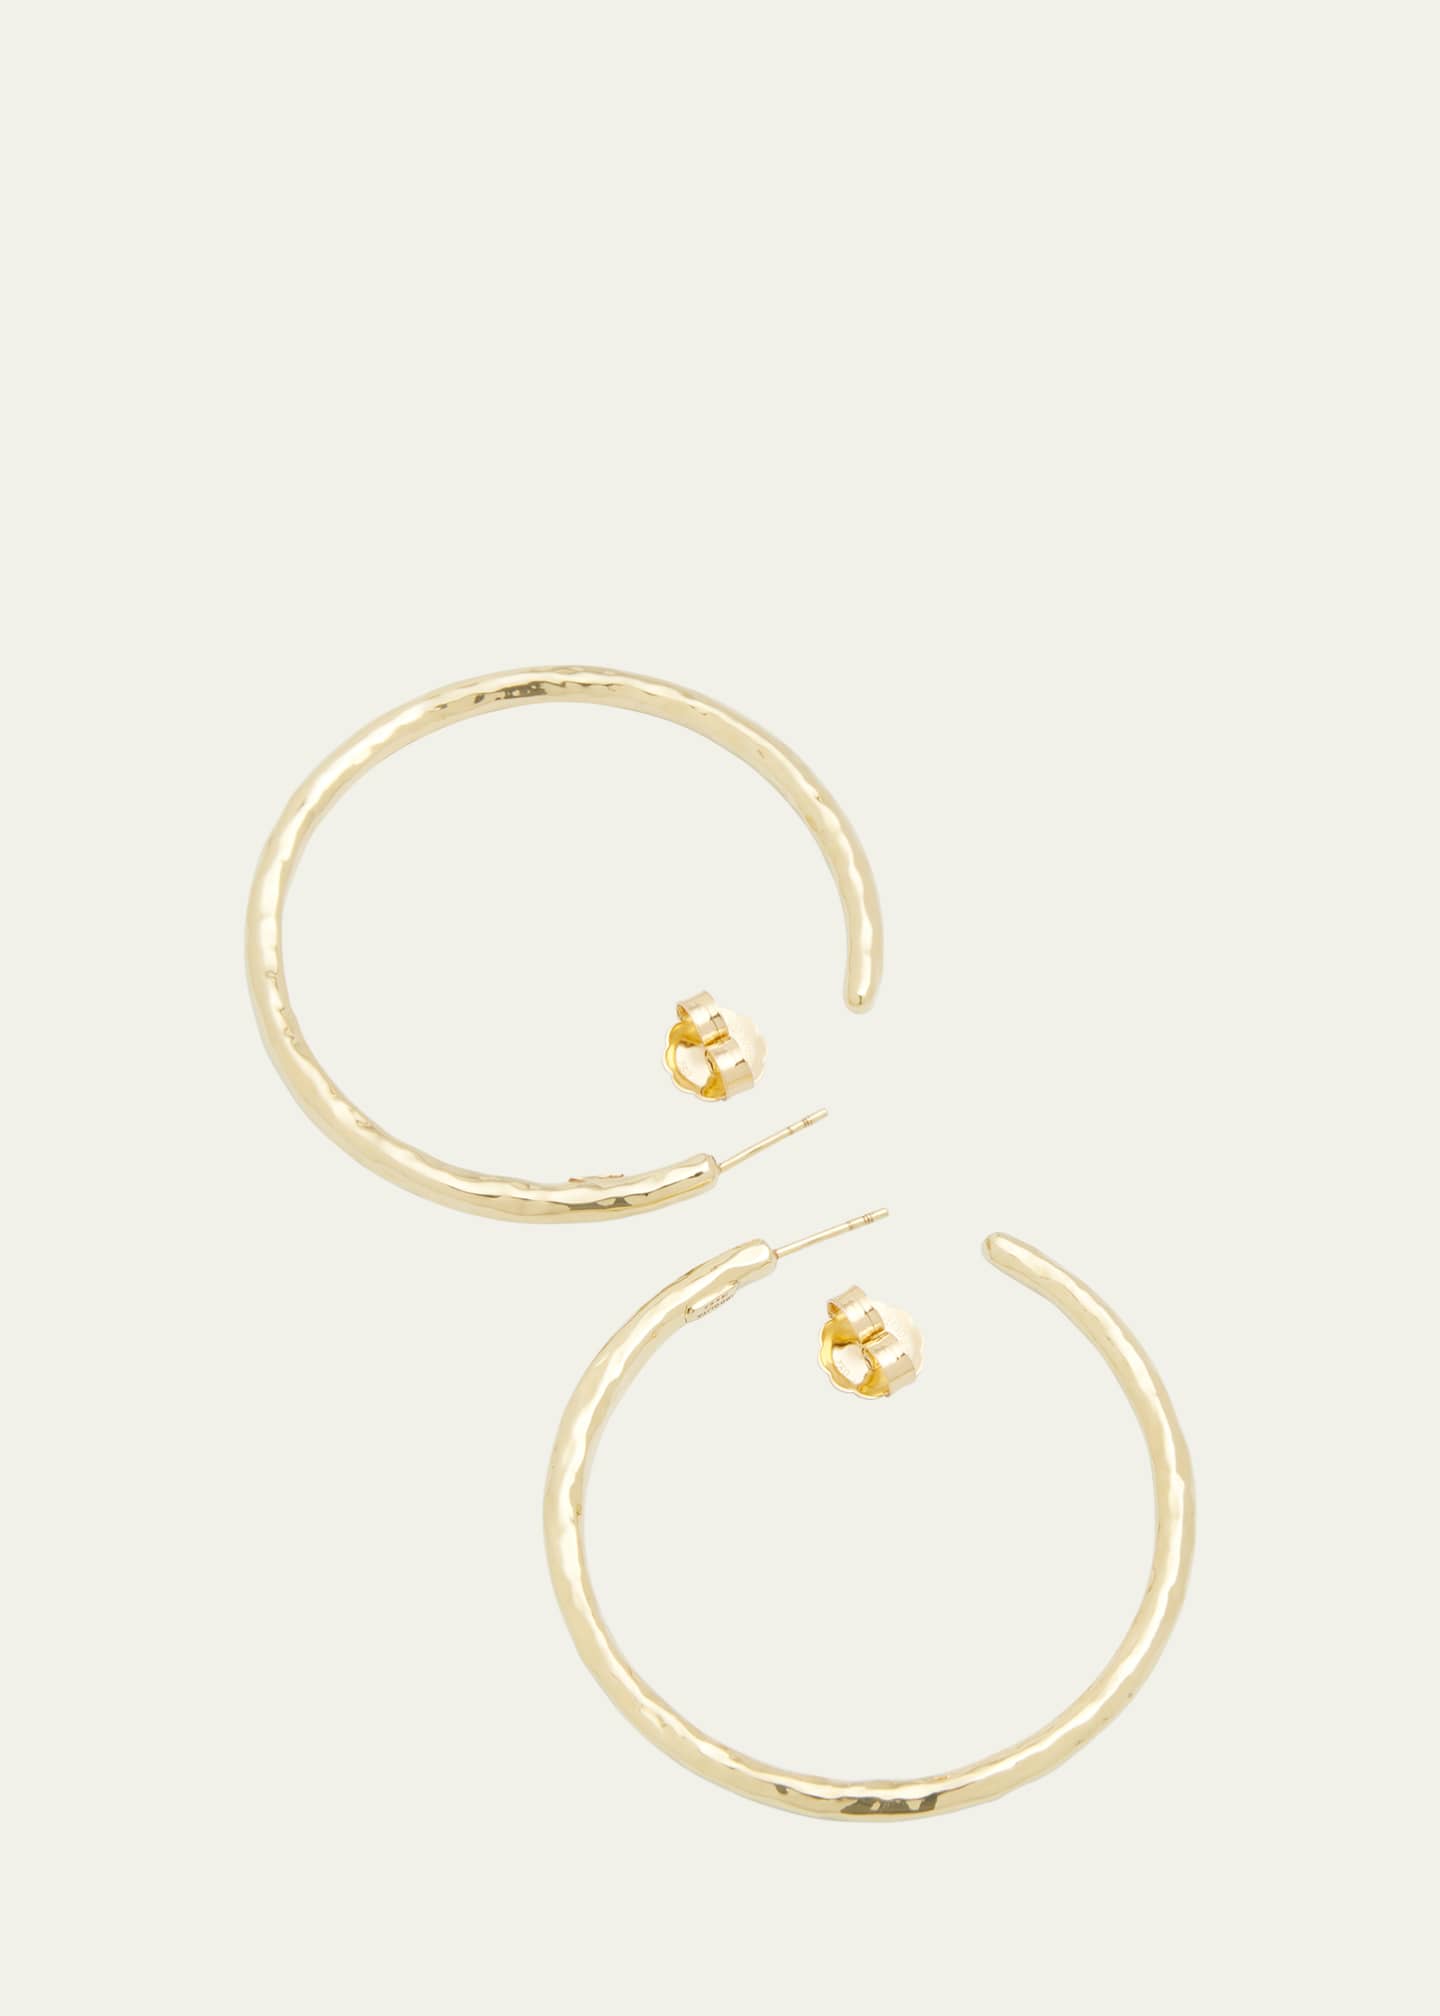 Ippolita Large Hoop Earrings in 18K Gold Image 4 of 4